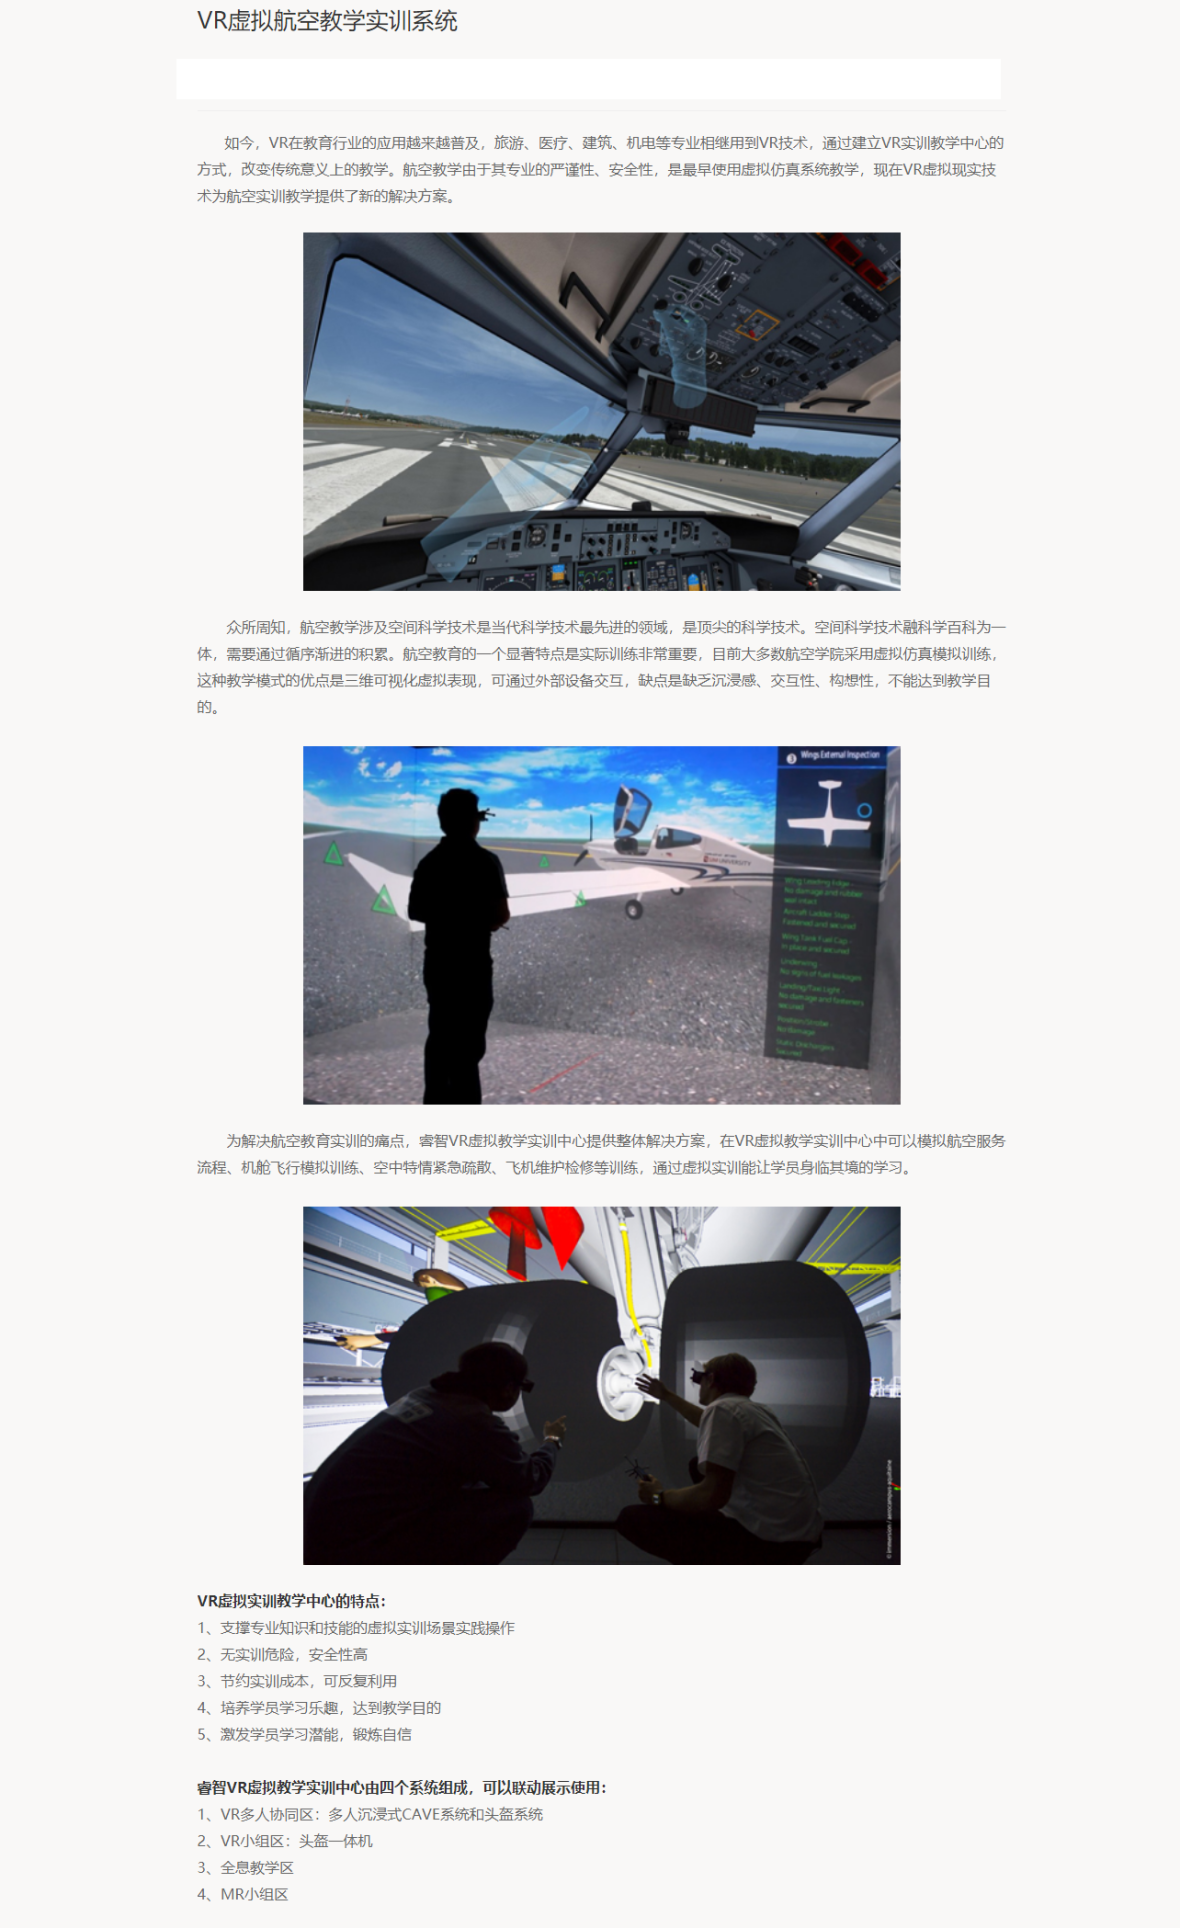 企服商城, VR虚拟航空教学实训系统,睿智教育科技